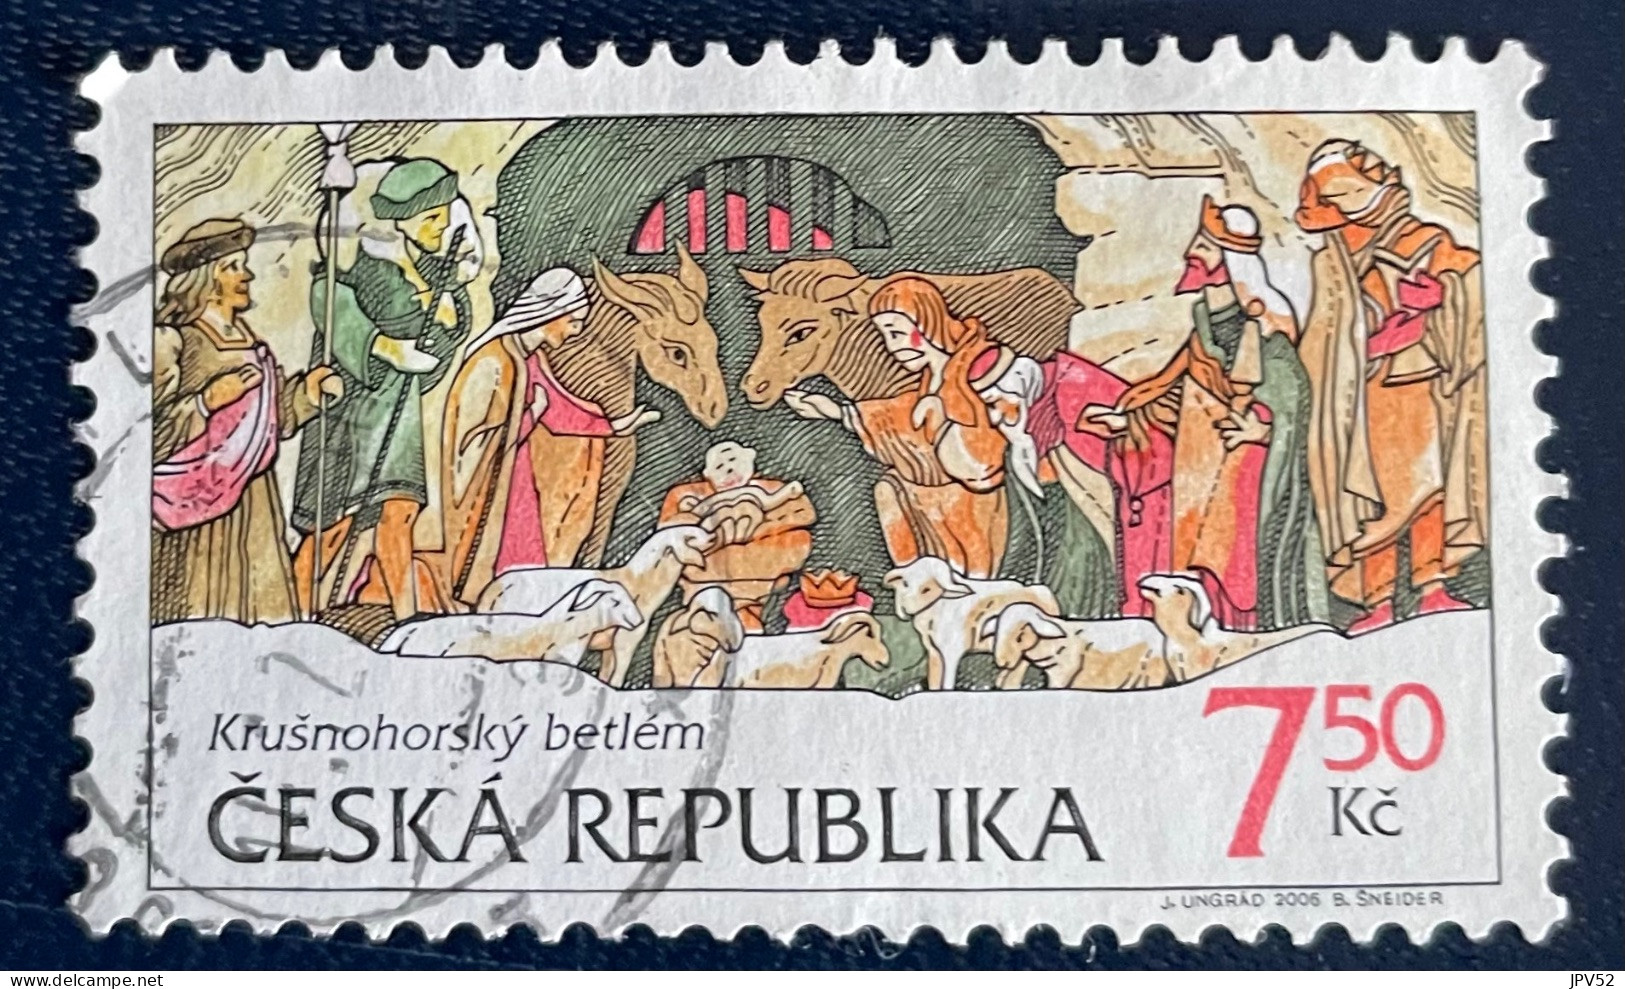 Ceska Republika - Tsjechië - C4/6 - 2006 - (°)used - Michel 496 - Kerstmis - Used Stamps